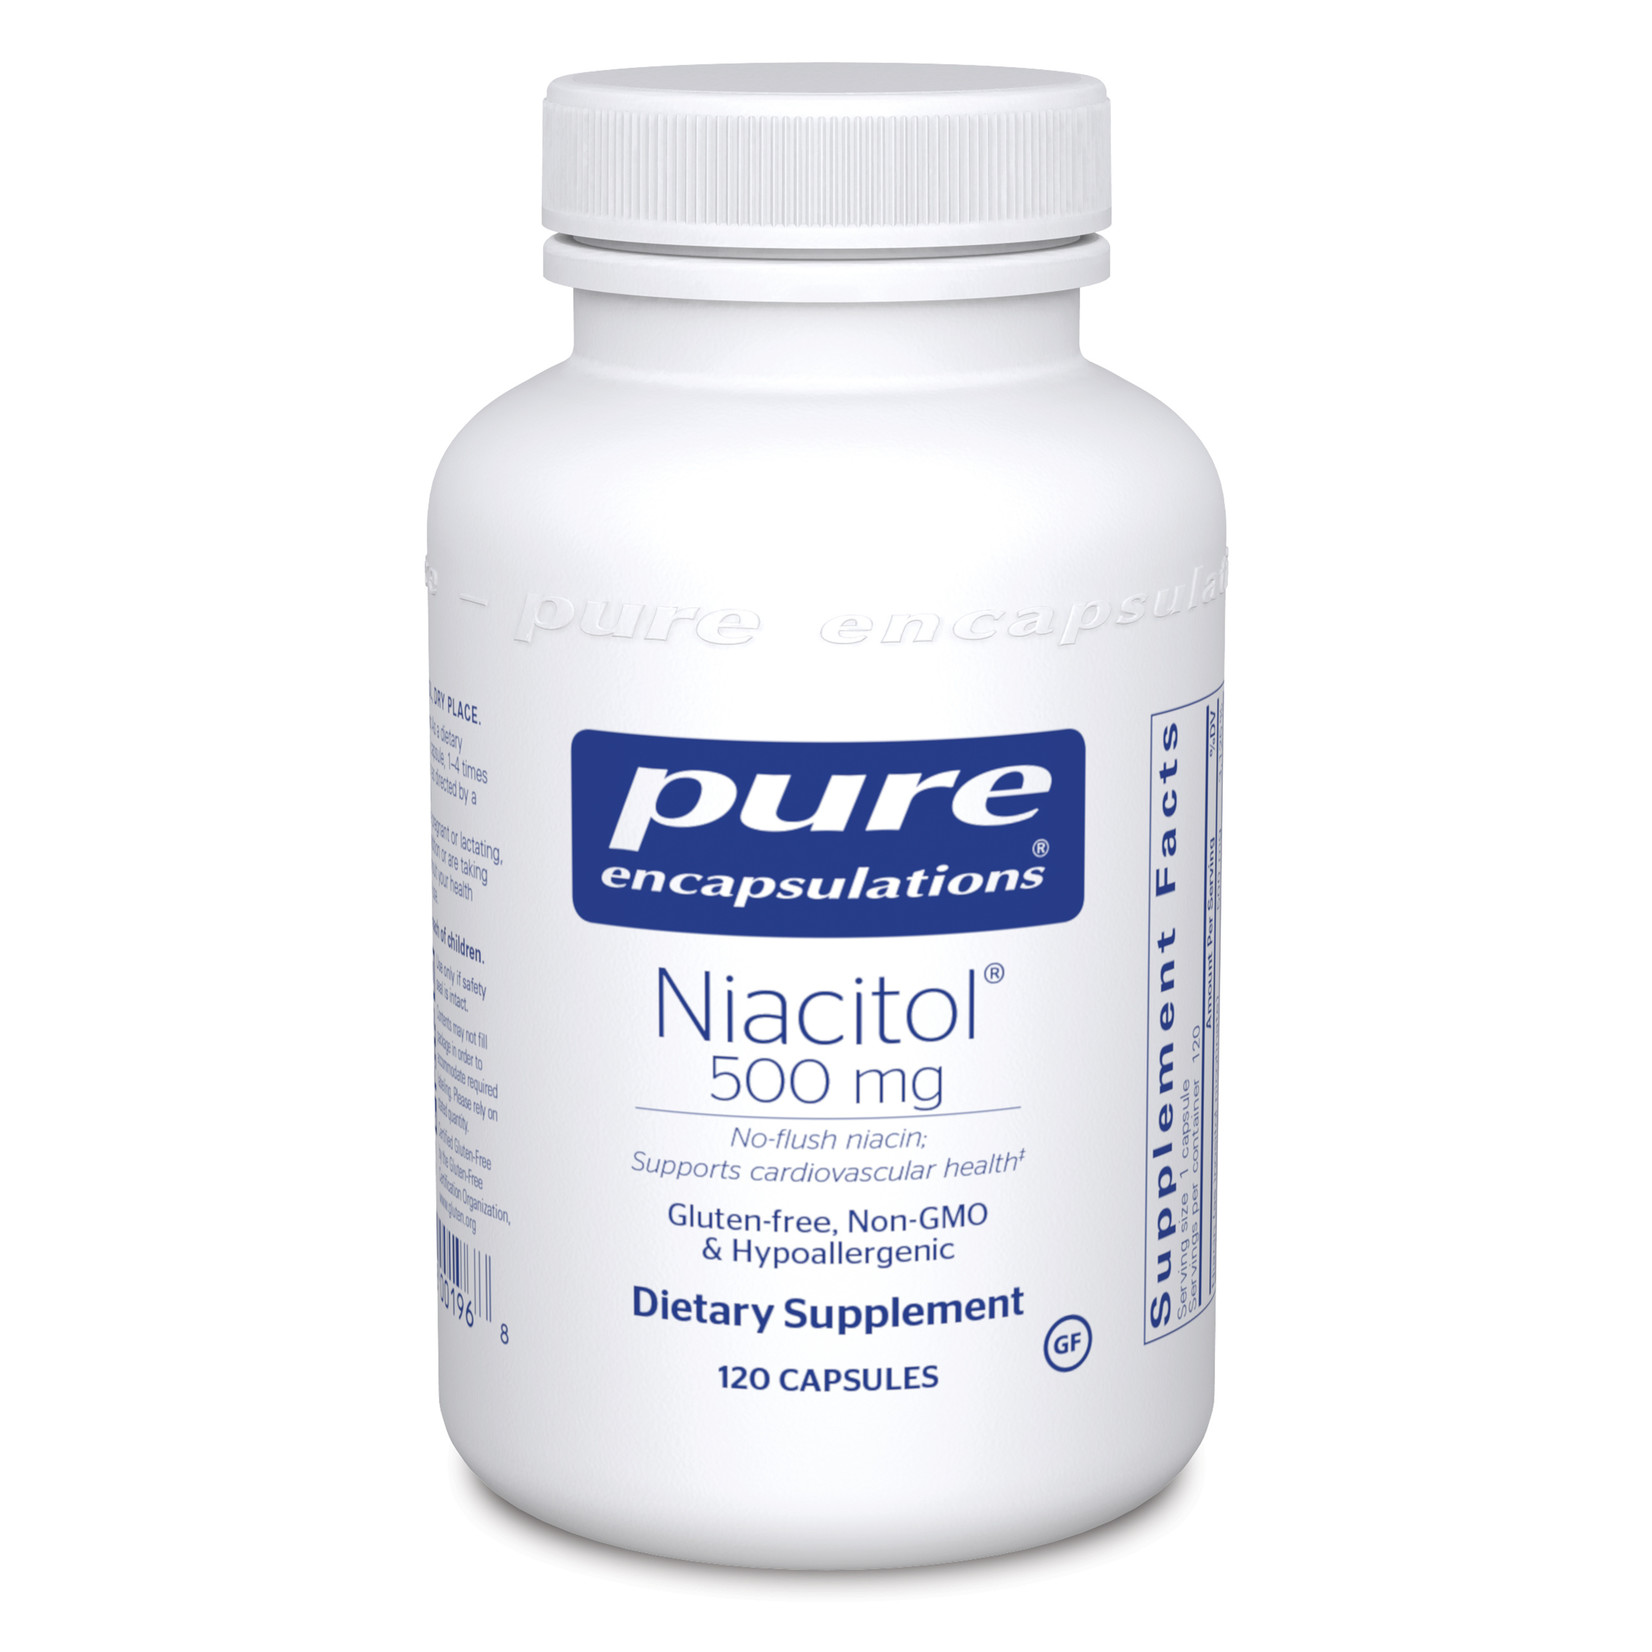 Pure Encapsulations Pure Encapsulations - Niacitol 500 mg - 120 Capsules